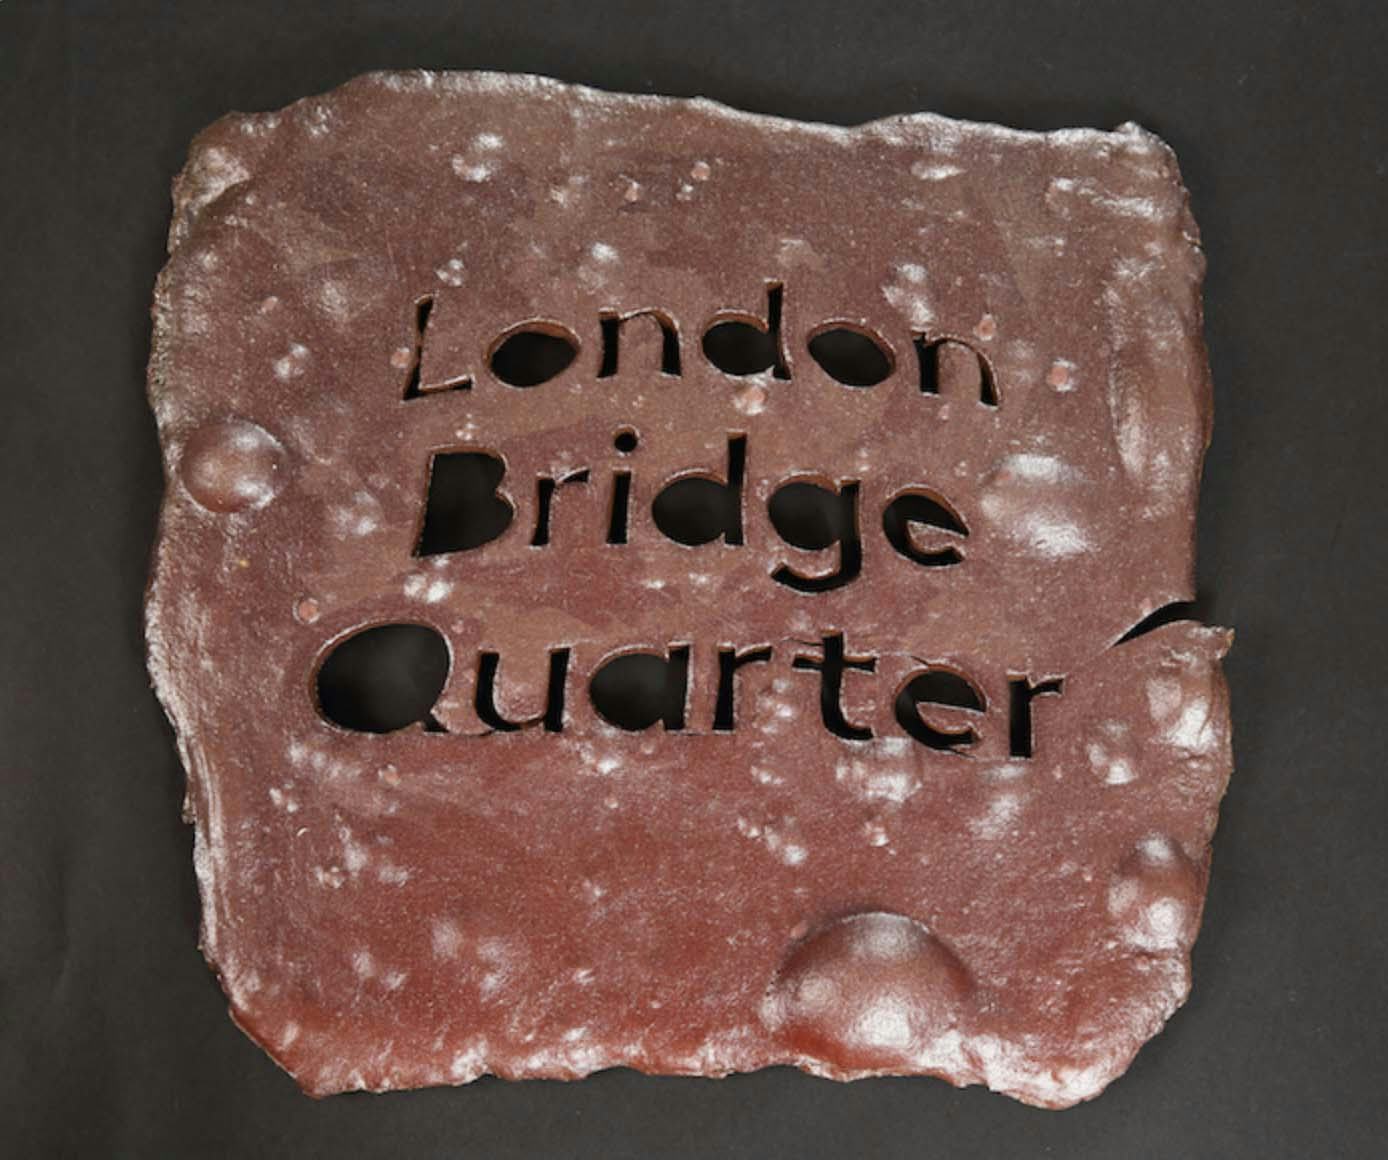 A rough ceramic tile with the words ‘London Bridge Quarter’ cut out